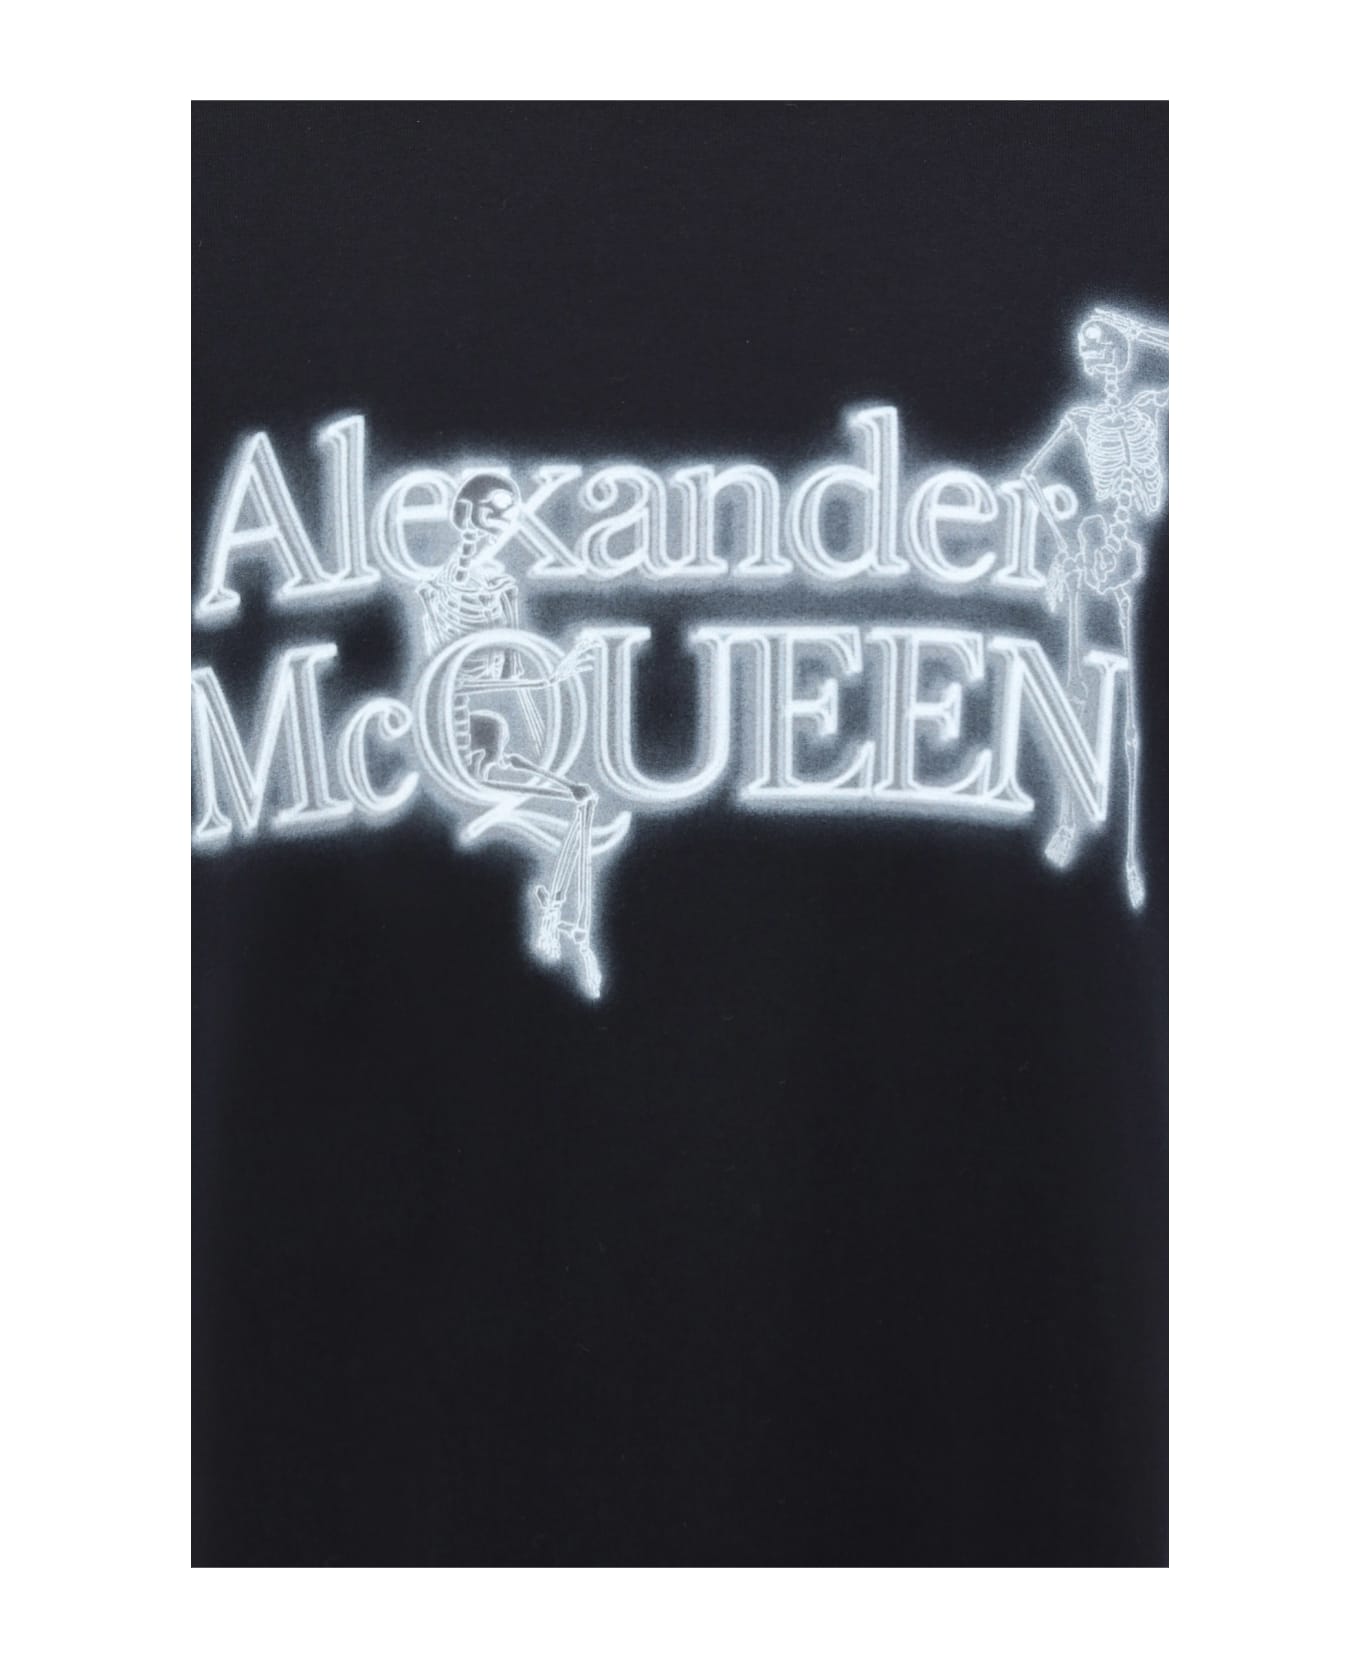 Alexander McQueen Skull Lettering T-shirt - Black